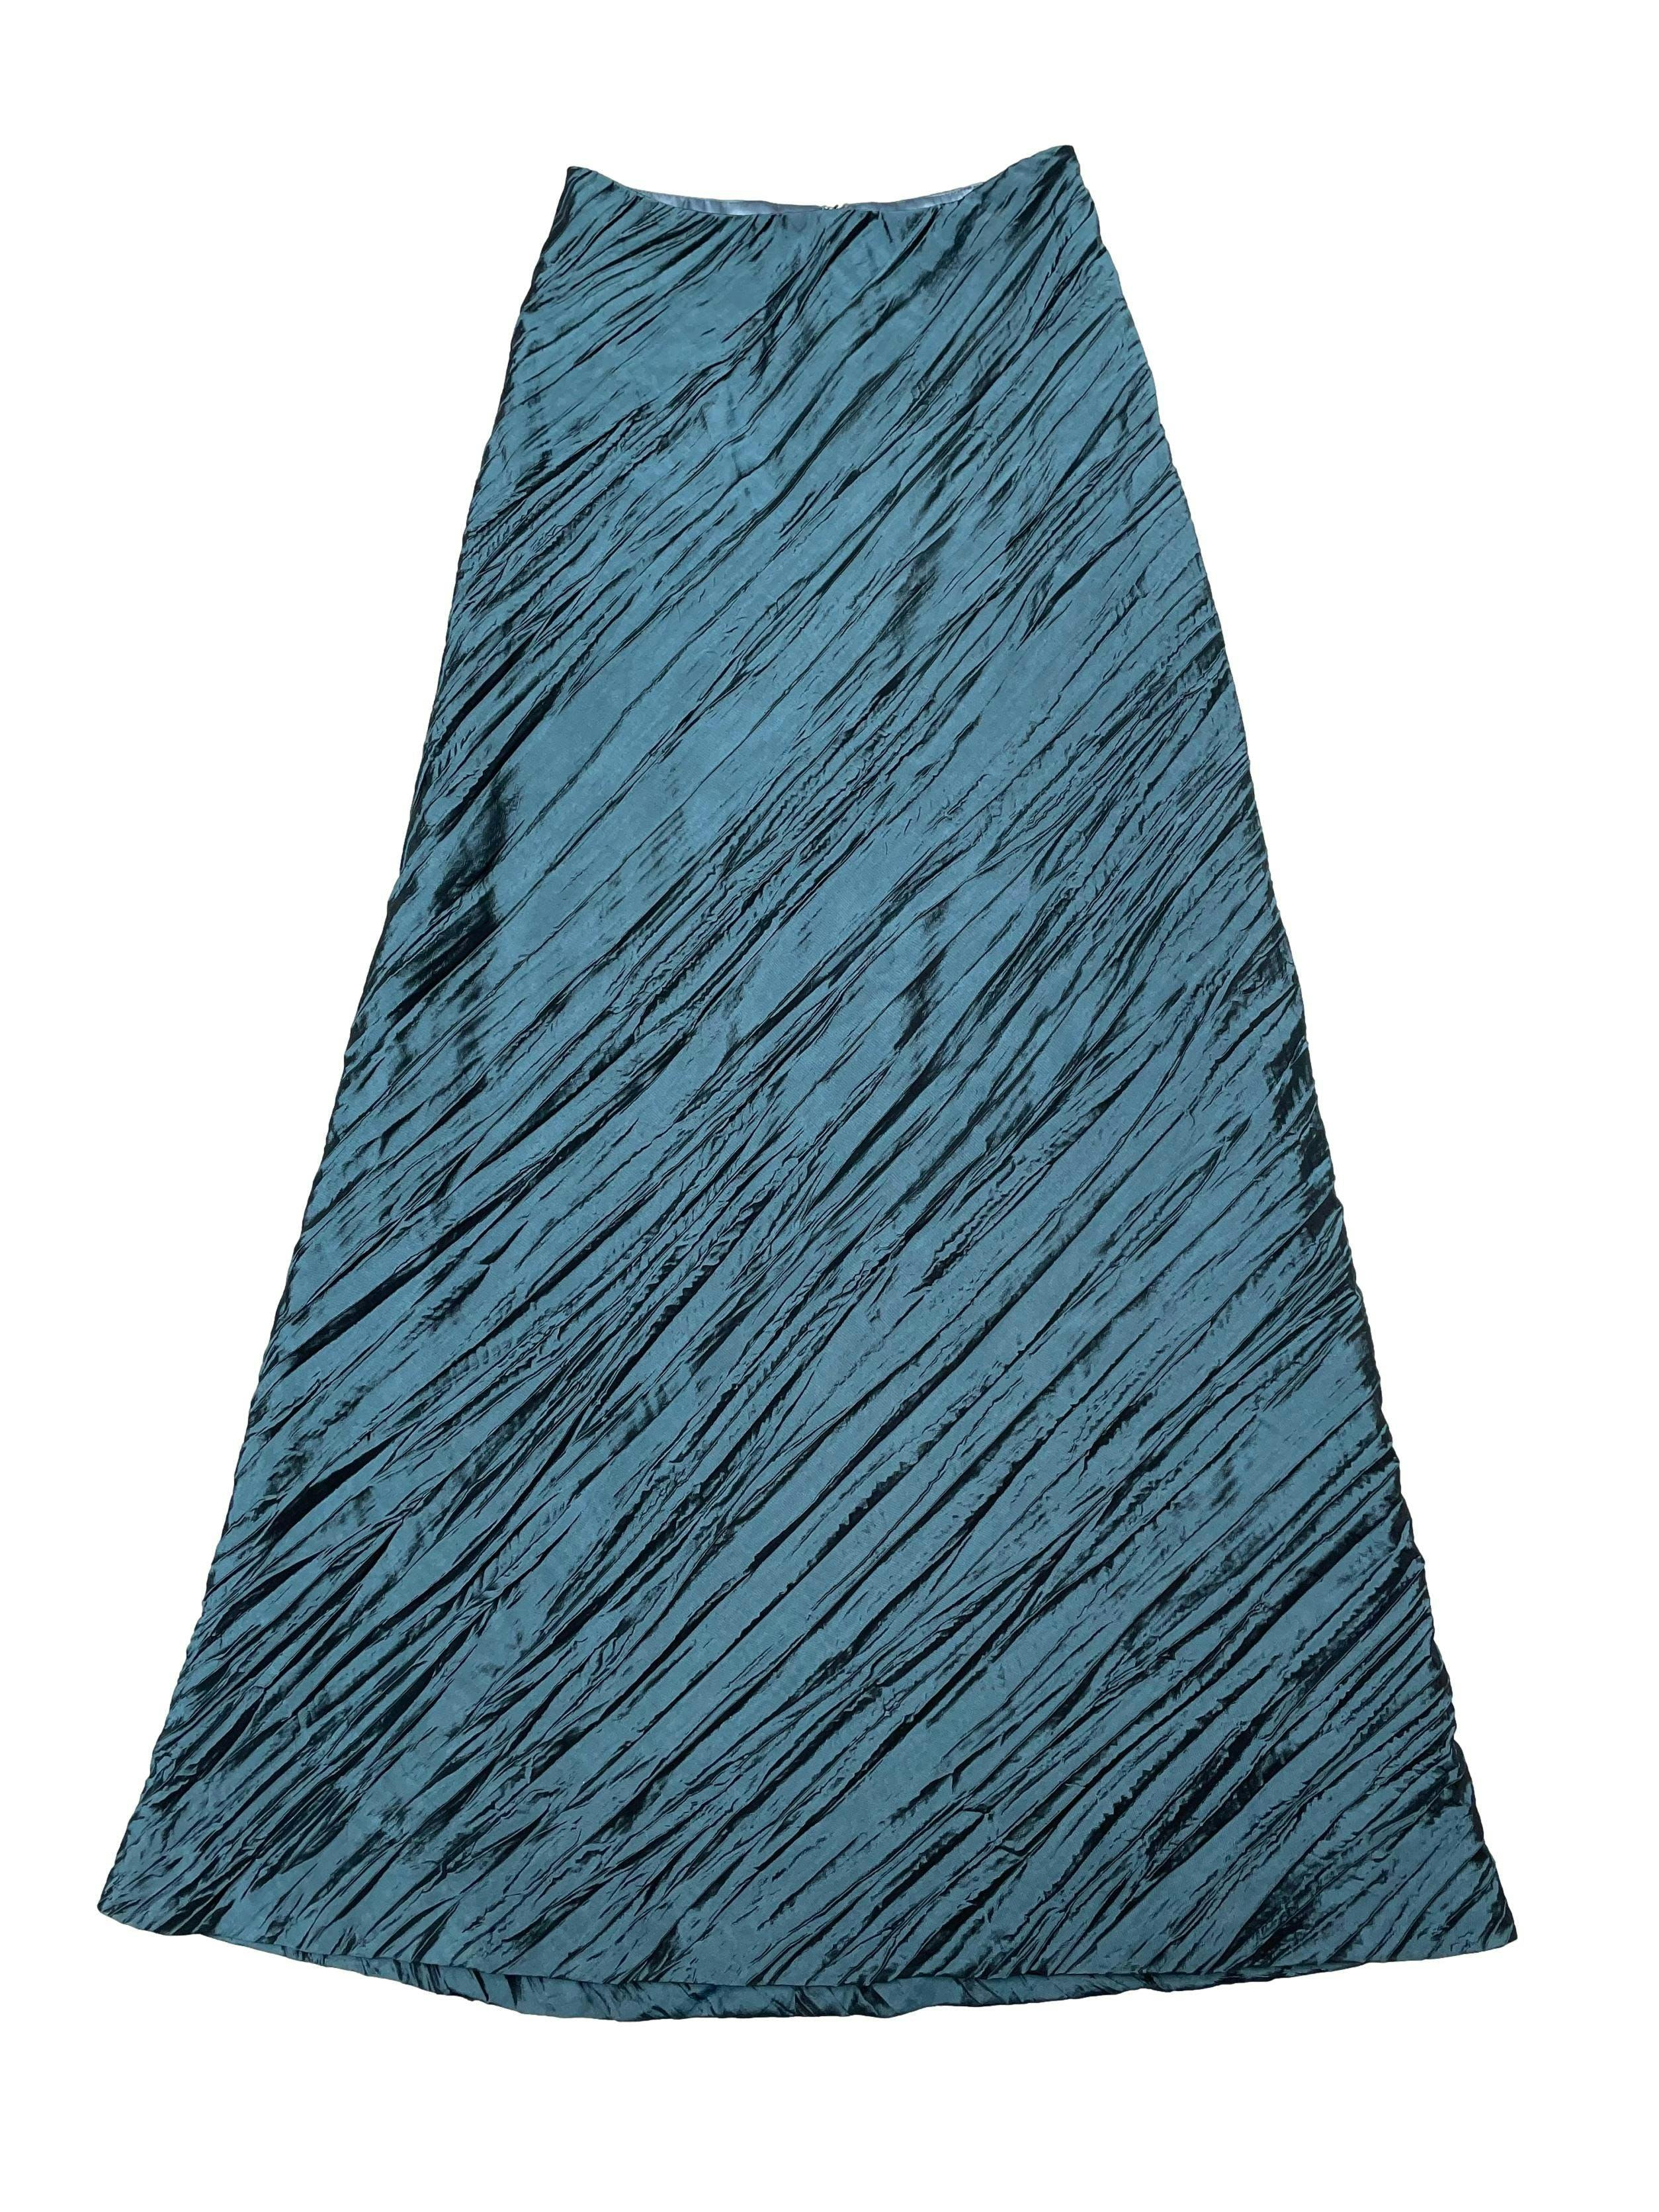 Maxi falda de tela tipo taslán corrugado, línea en A, forrada y con cierre posterior. Cintura 70cm Largo 115cm